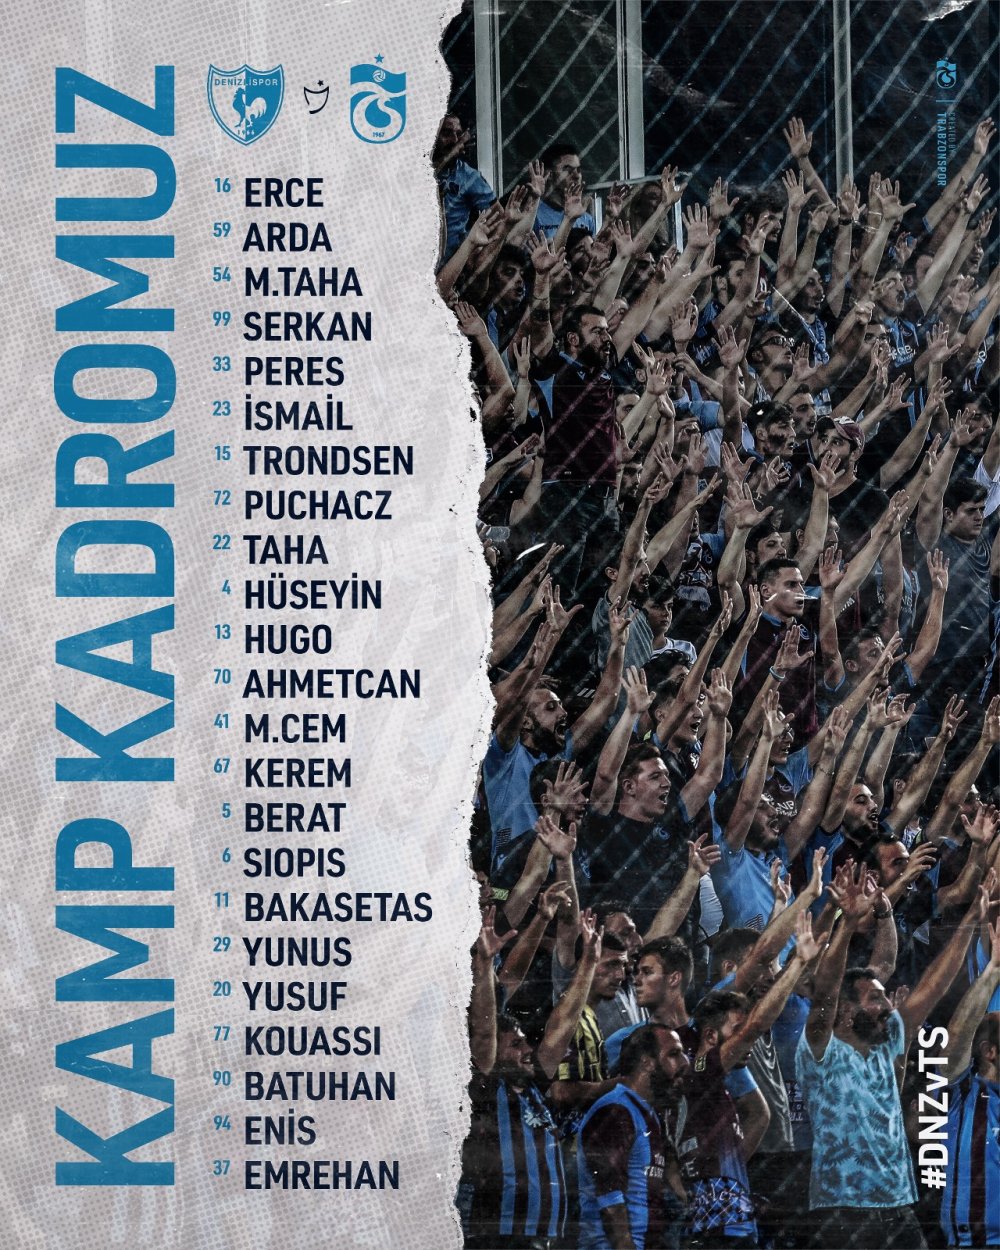 Trabzonspor'un Denizli kamp kadrosu belli oldu